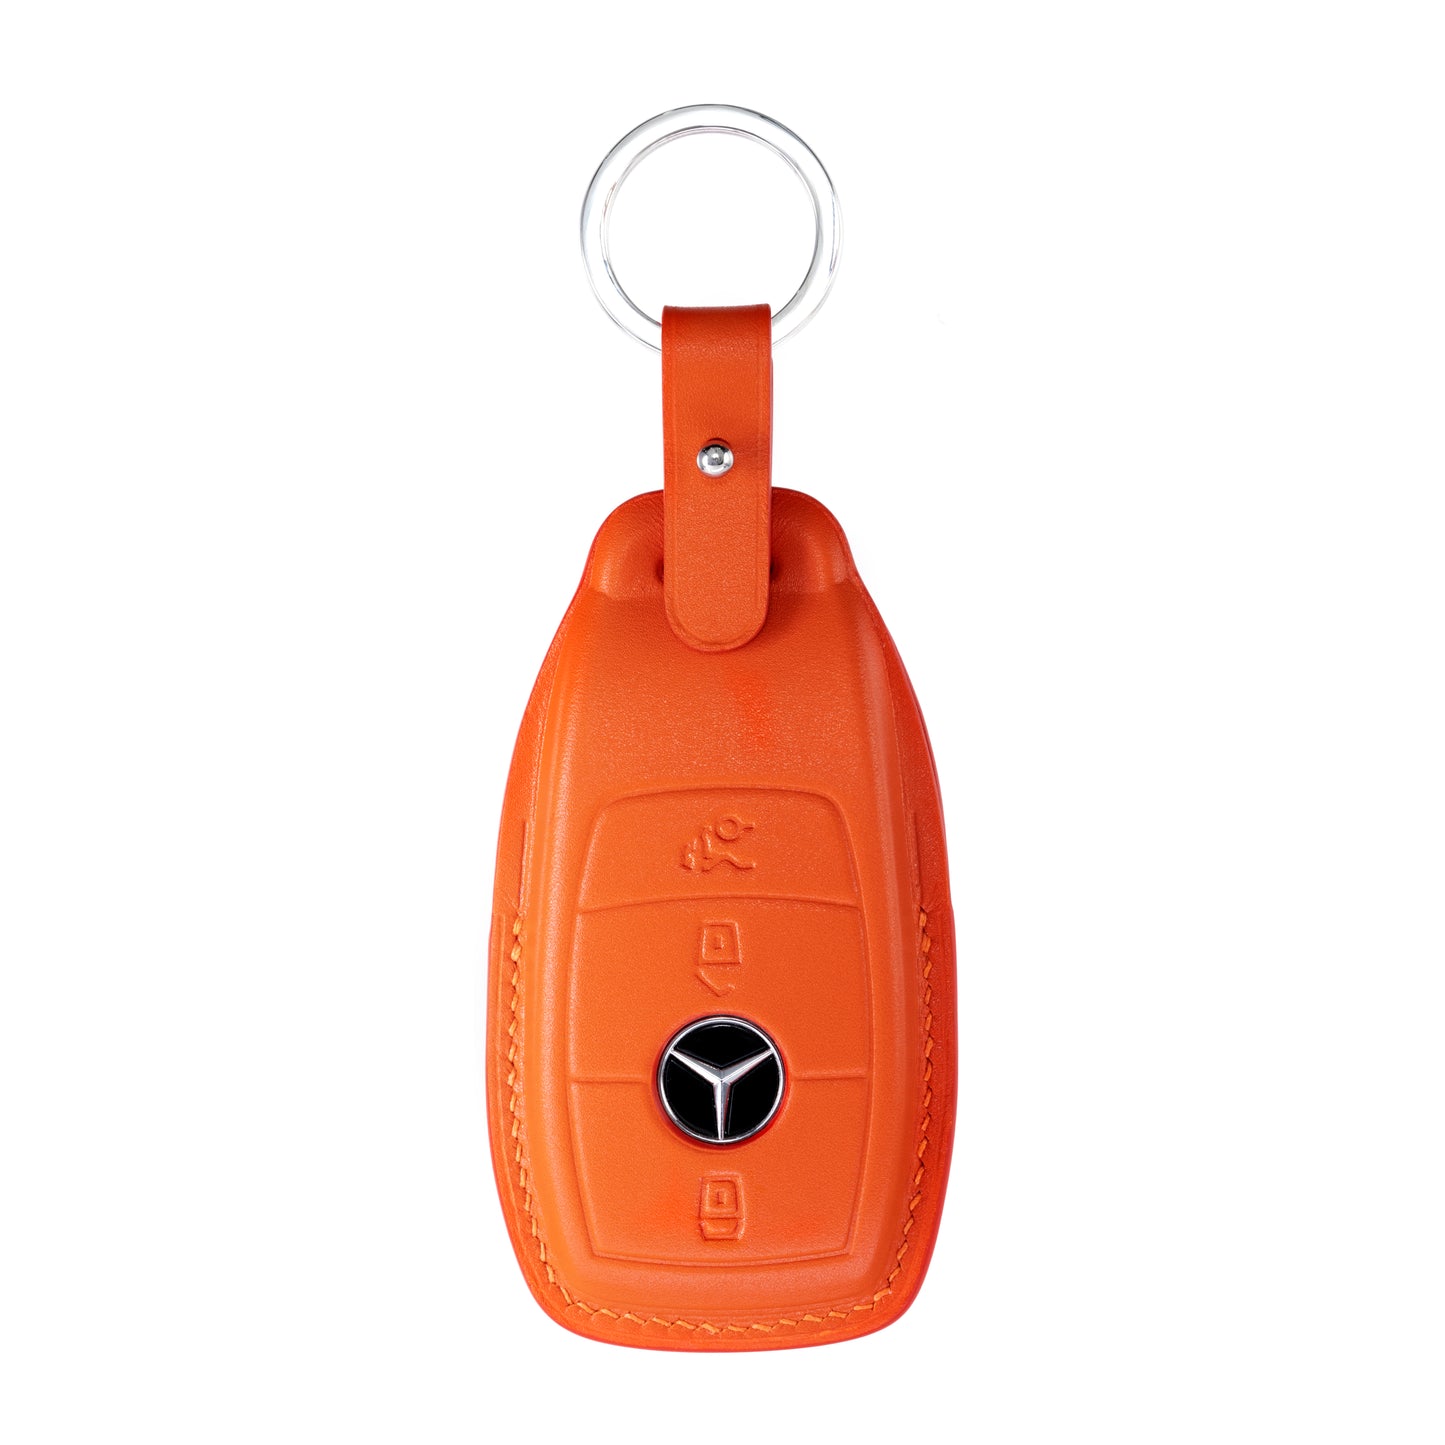 Mercedes E Class Key Fob Cover in Orange Nappa